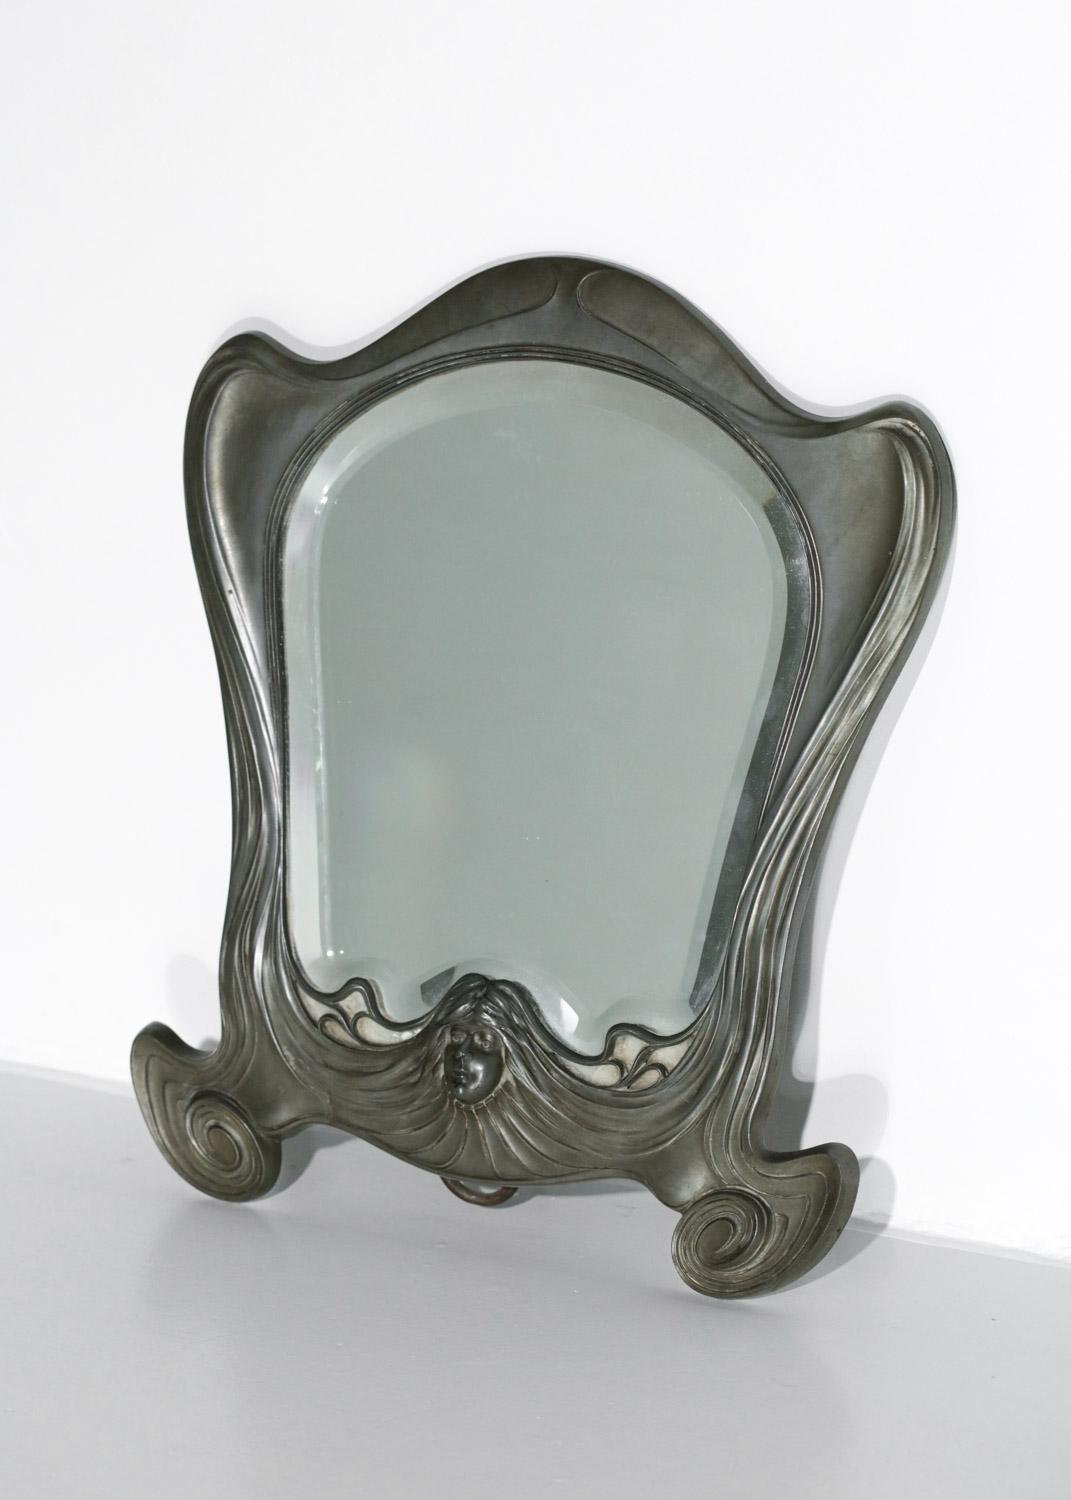 Art nouveau mirror Orivit Jugendstil 1920 Metallwarenfabrik Germany - G883 For Sale 3